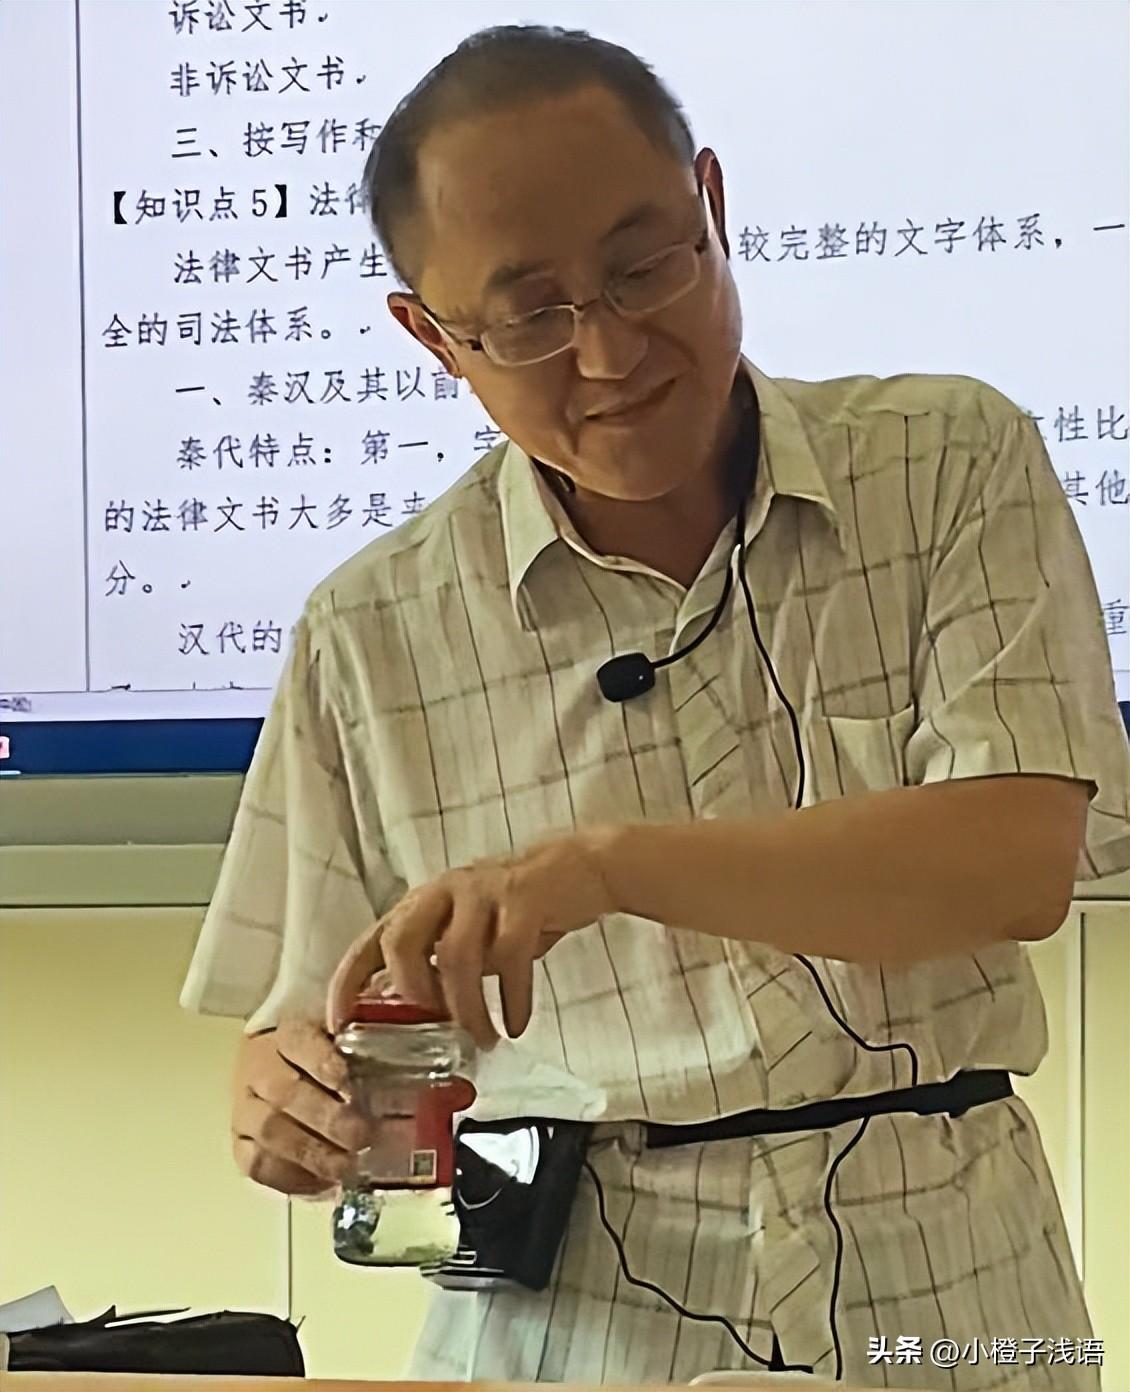 大学老师用老干妈瓶子喝水